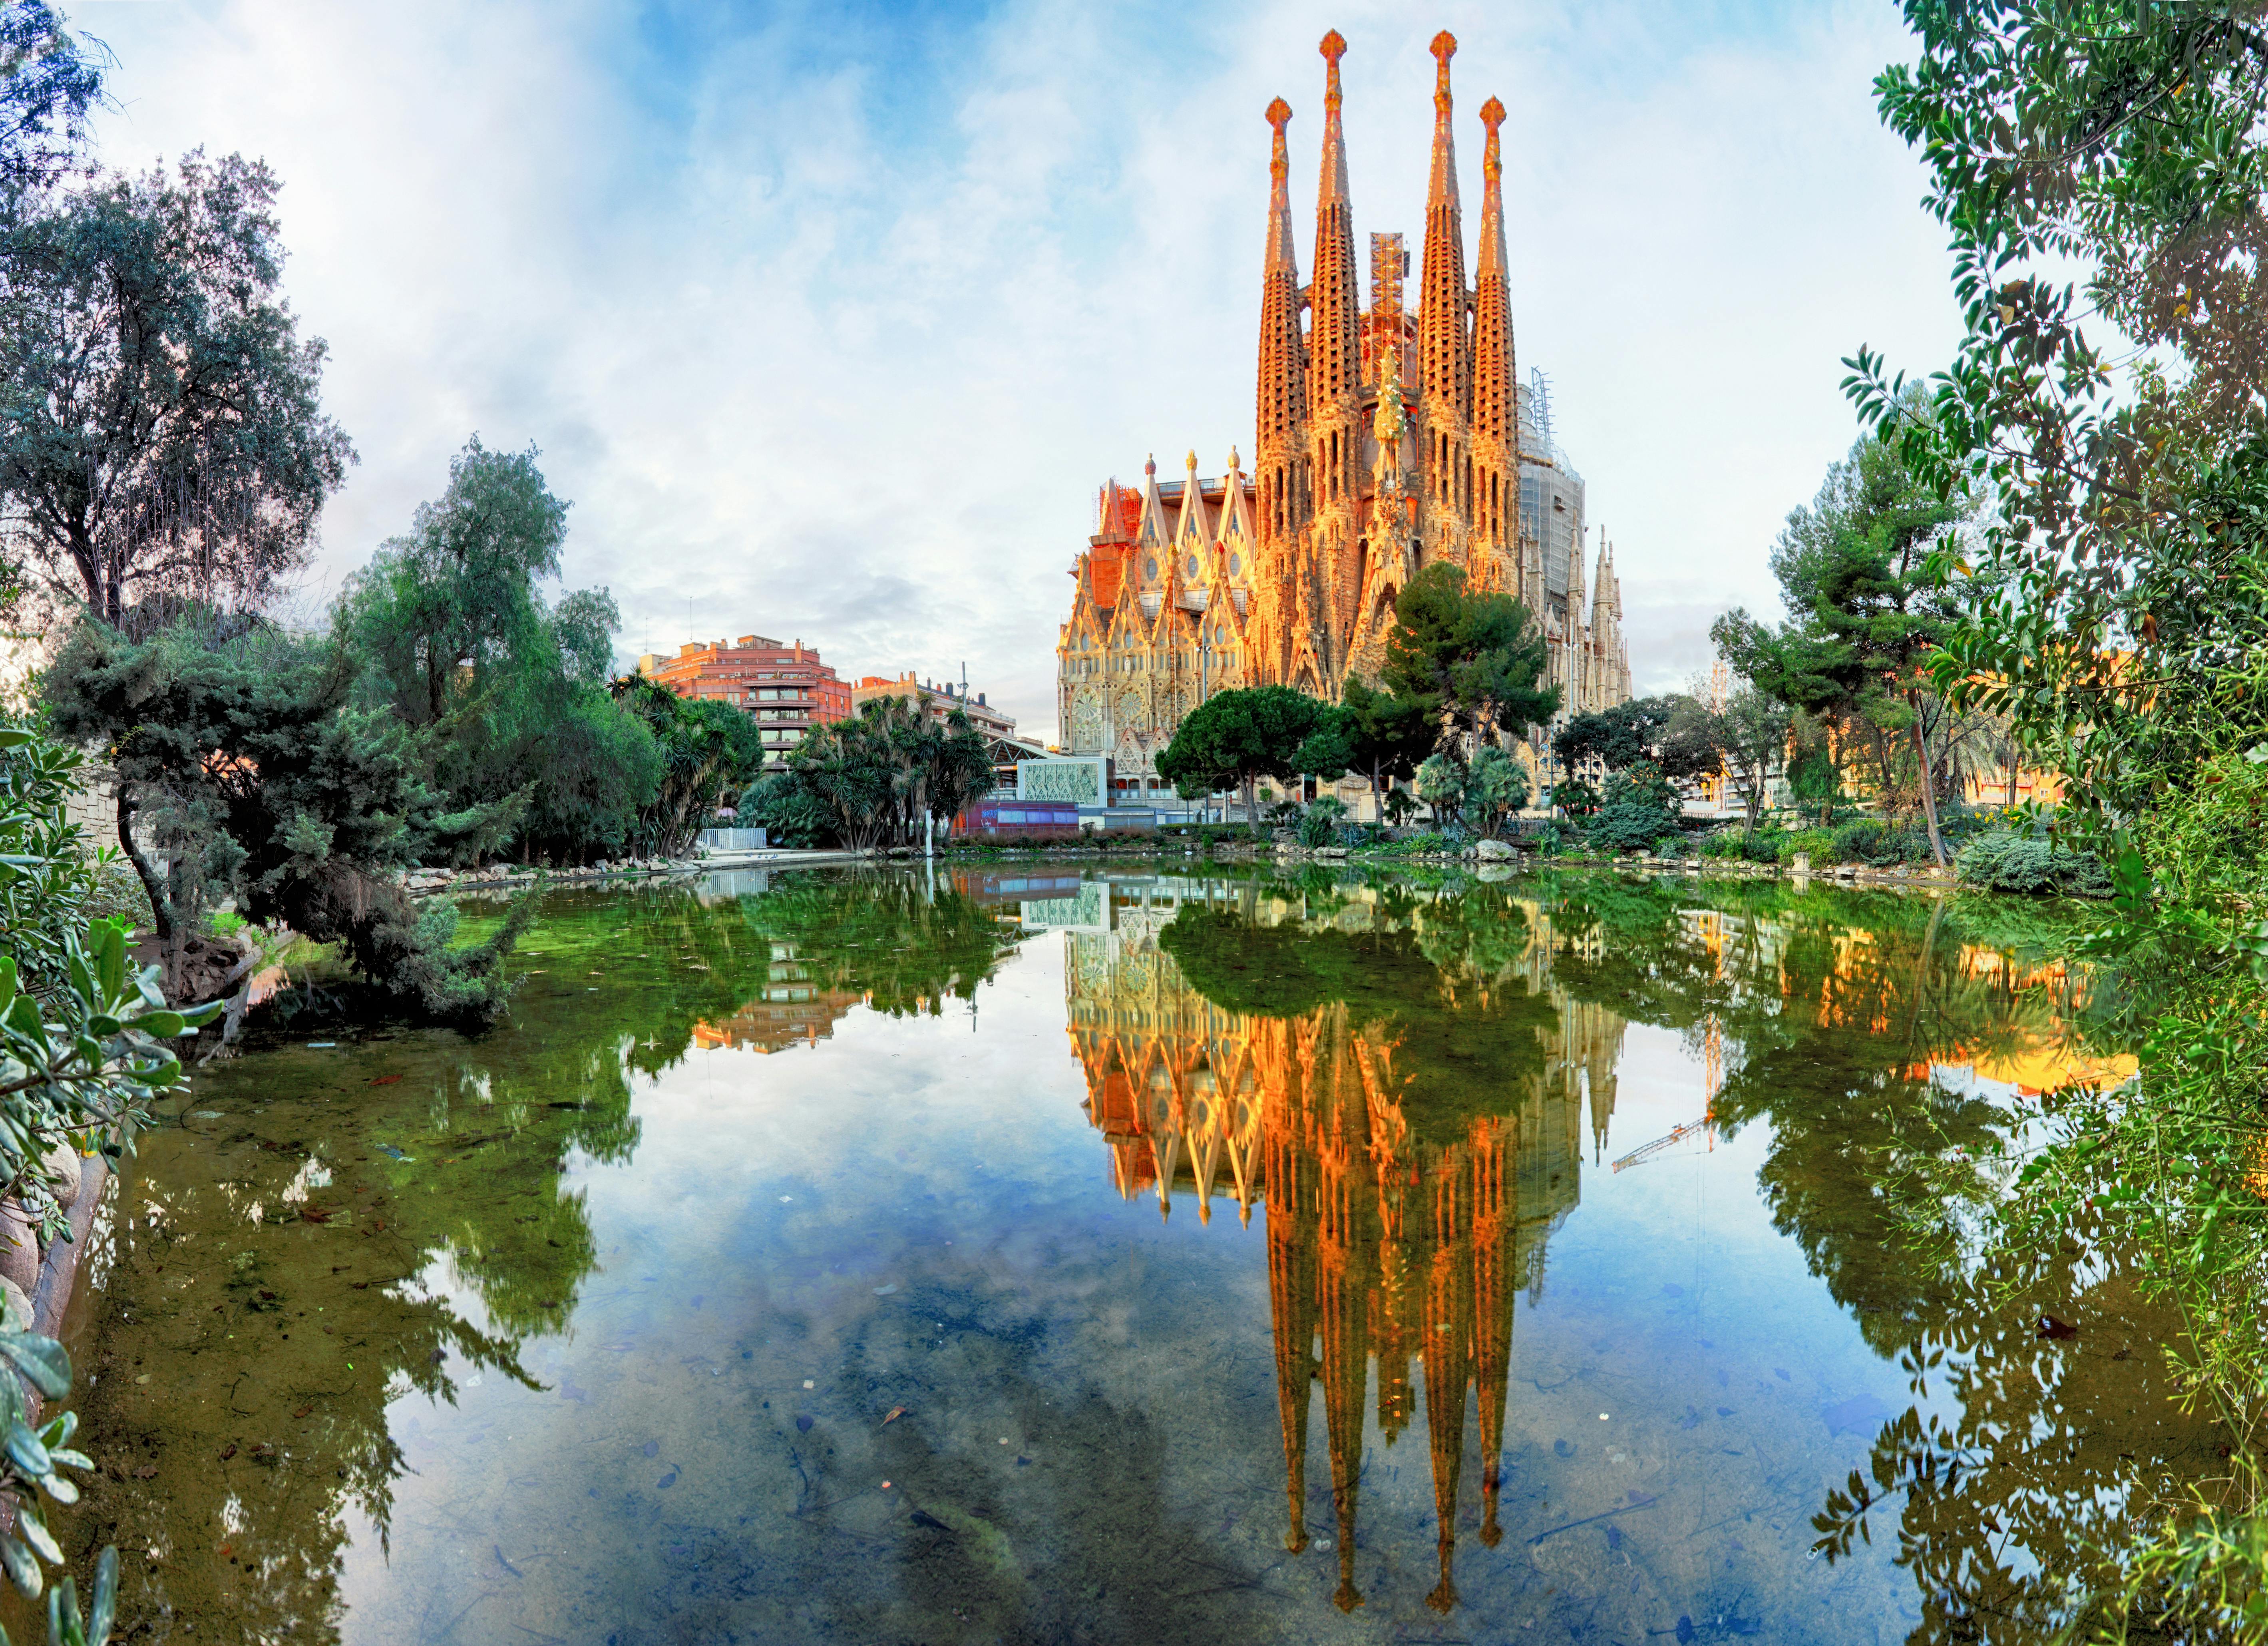 Landausflug zu den Highlights von Barcelona mit Ticket ohne Anstehen für die Sagrada Familia